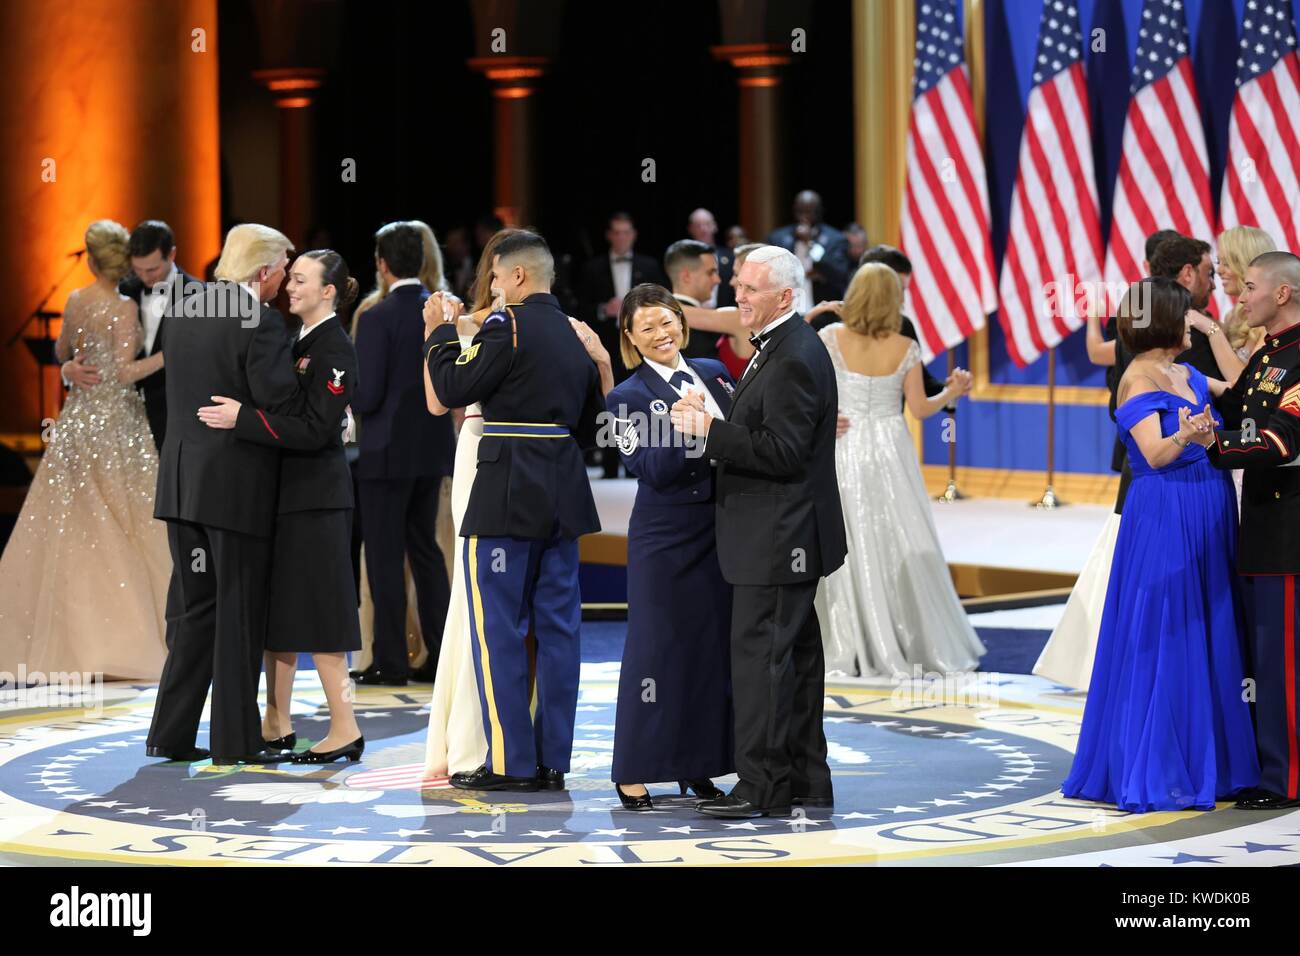 Presidente Donald Trump, VP Mike Pence, e mogli di danza con i militari e i soccorritori. Essi sono in omaggio per i nostri servizi armati palla al National Building Museum di Washington, 20 gennaio, 2017 (BSLOC 2017 18 126) Foto Stock